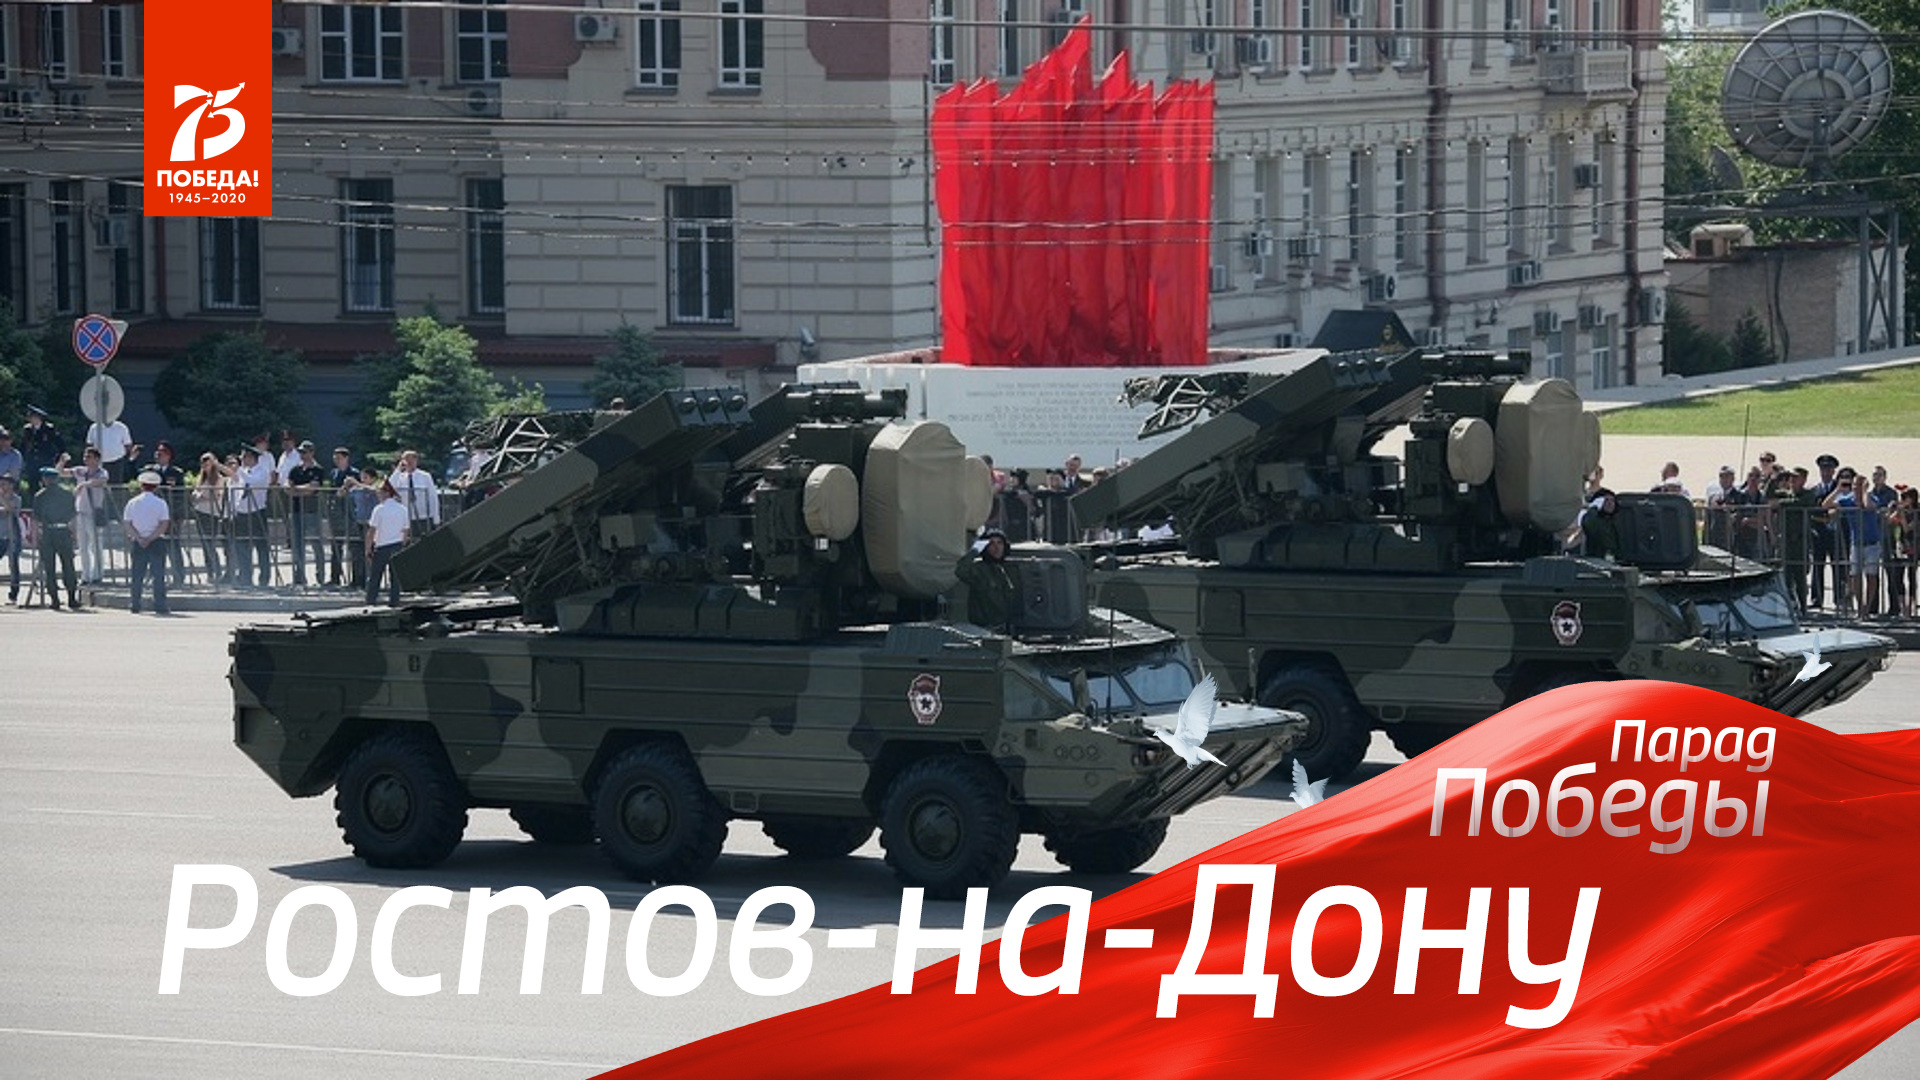 Парад Победы 2020 в Ростове-на-Дону